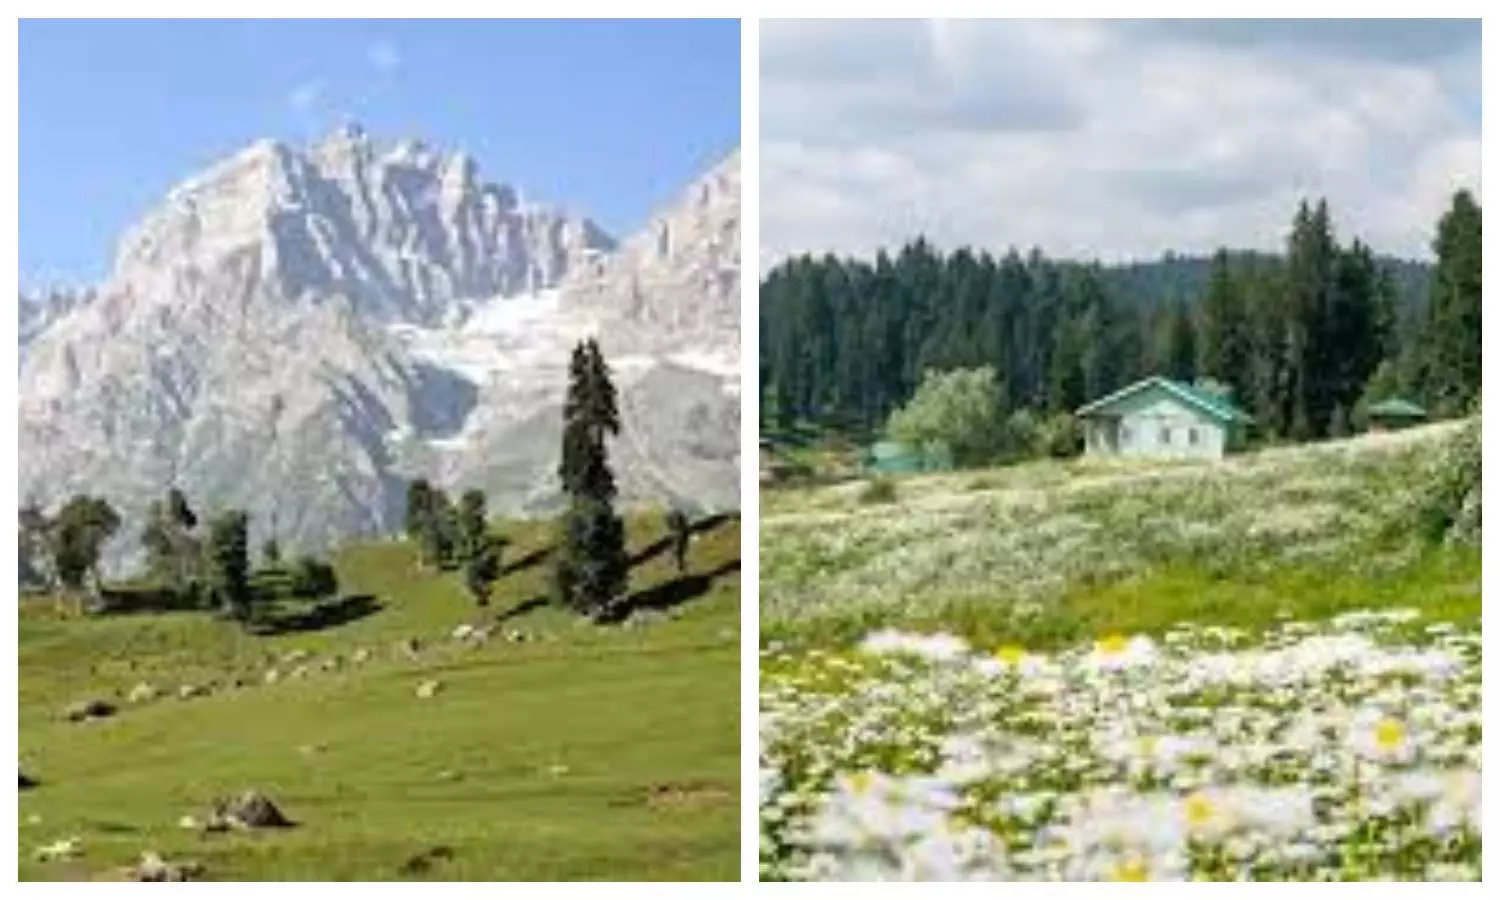 Yusmarg Valley in Kashmir:7,000 फीट ऊंचाई पर बसी यह घाटी प्रकृति प्रेमियों के लिए है एक स्वर्ग